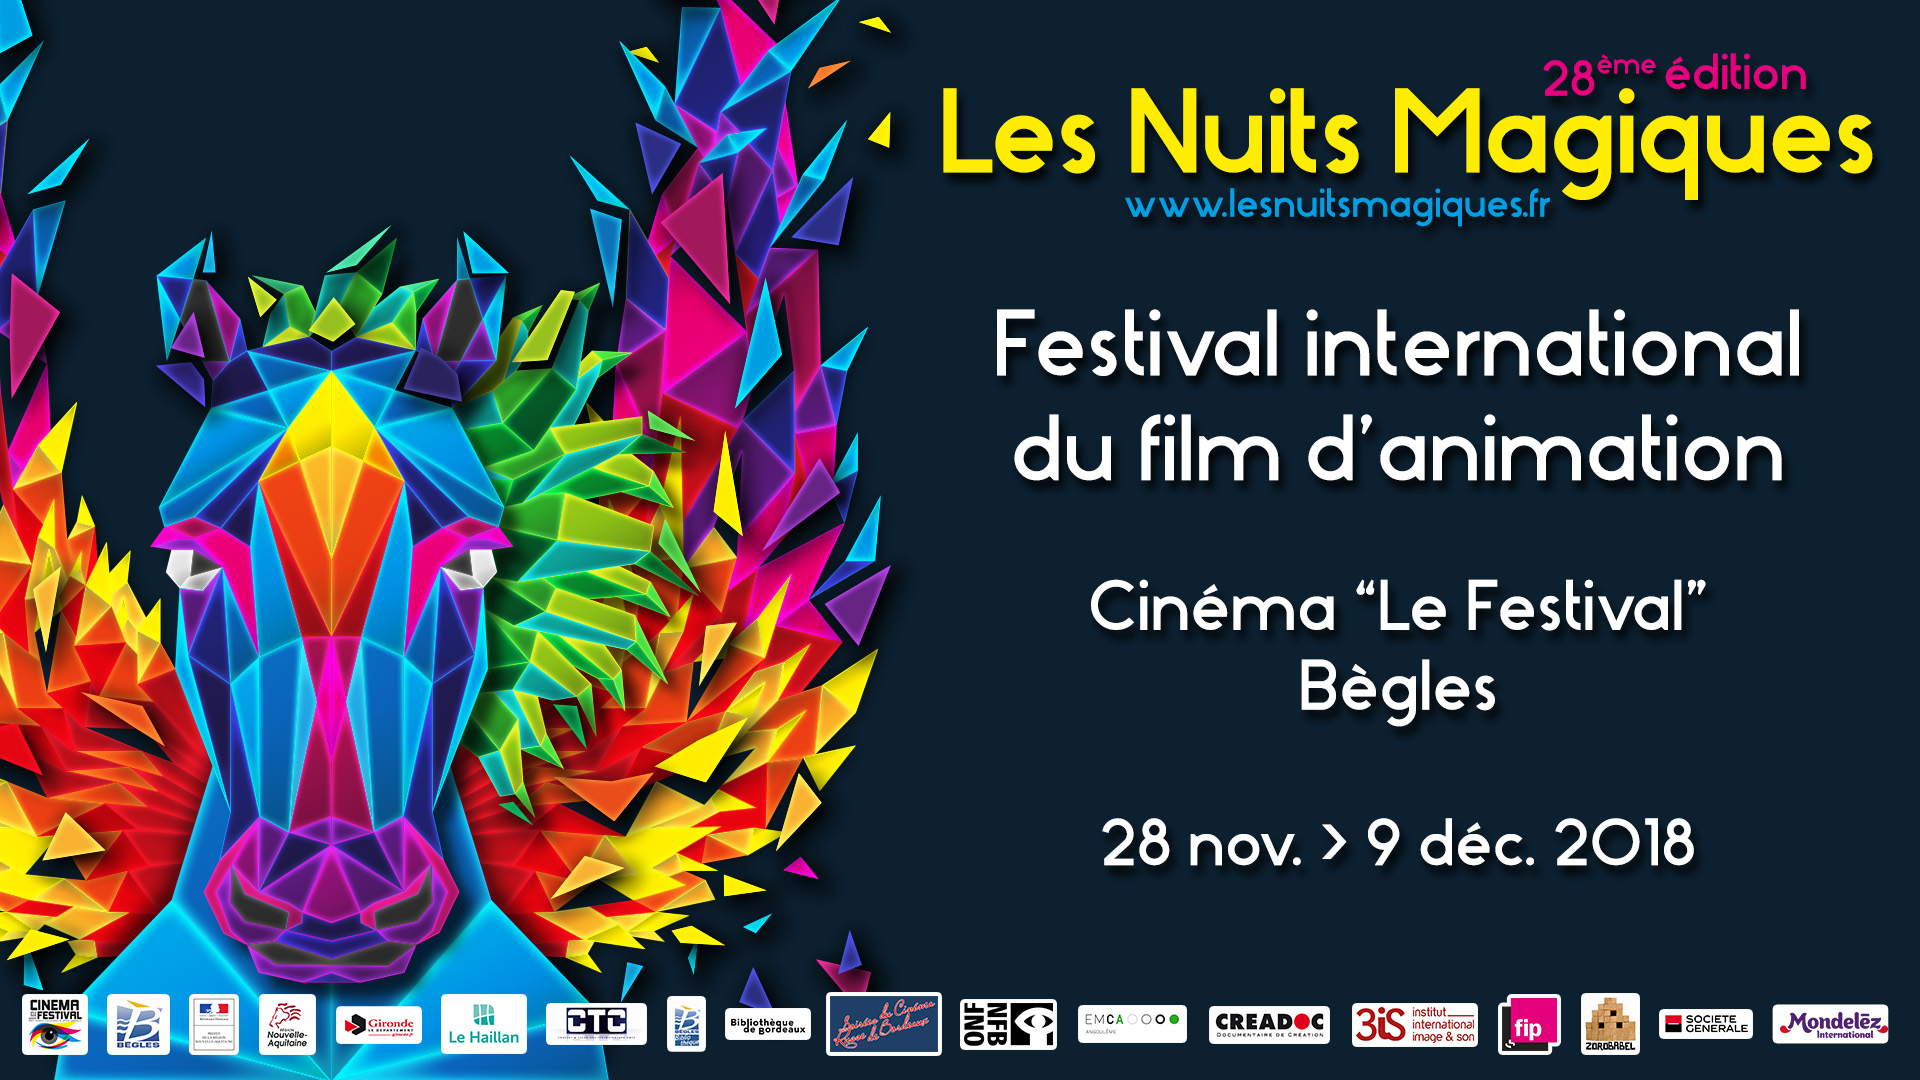 Les Nuits Magiques – Festival international du film d’animation